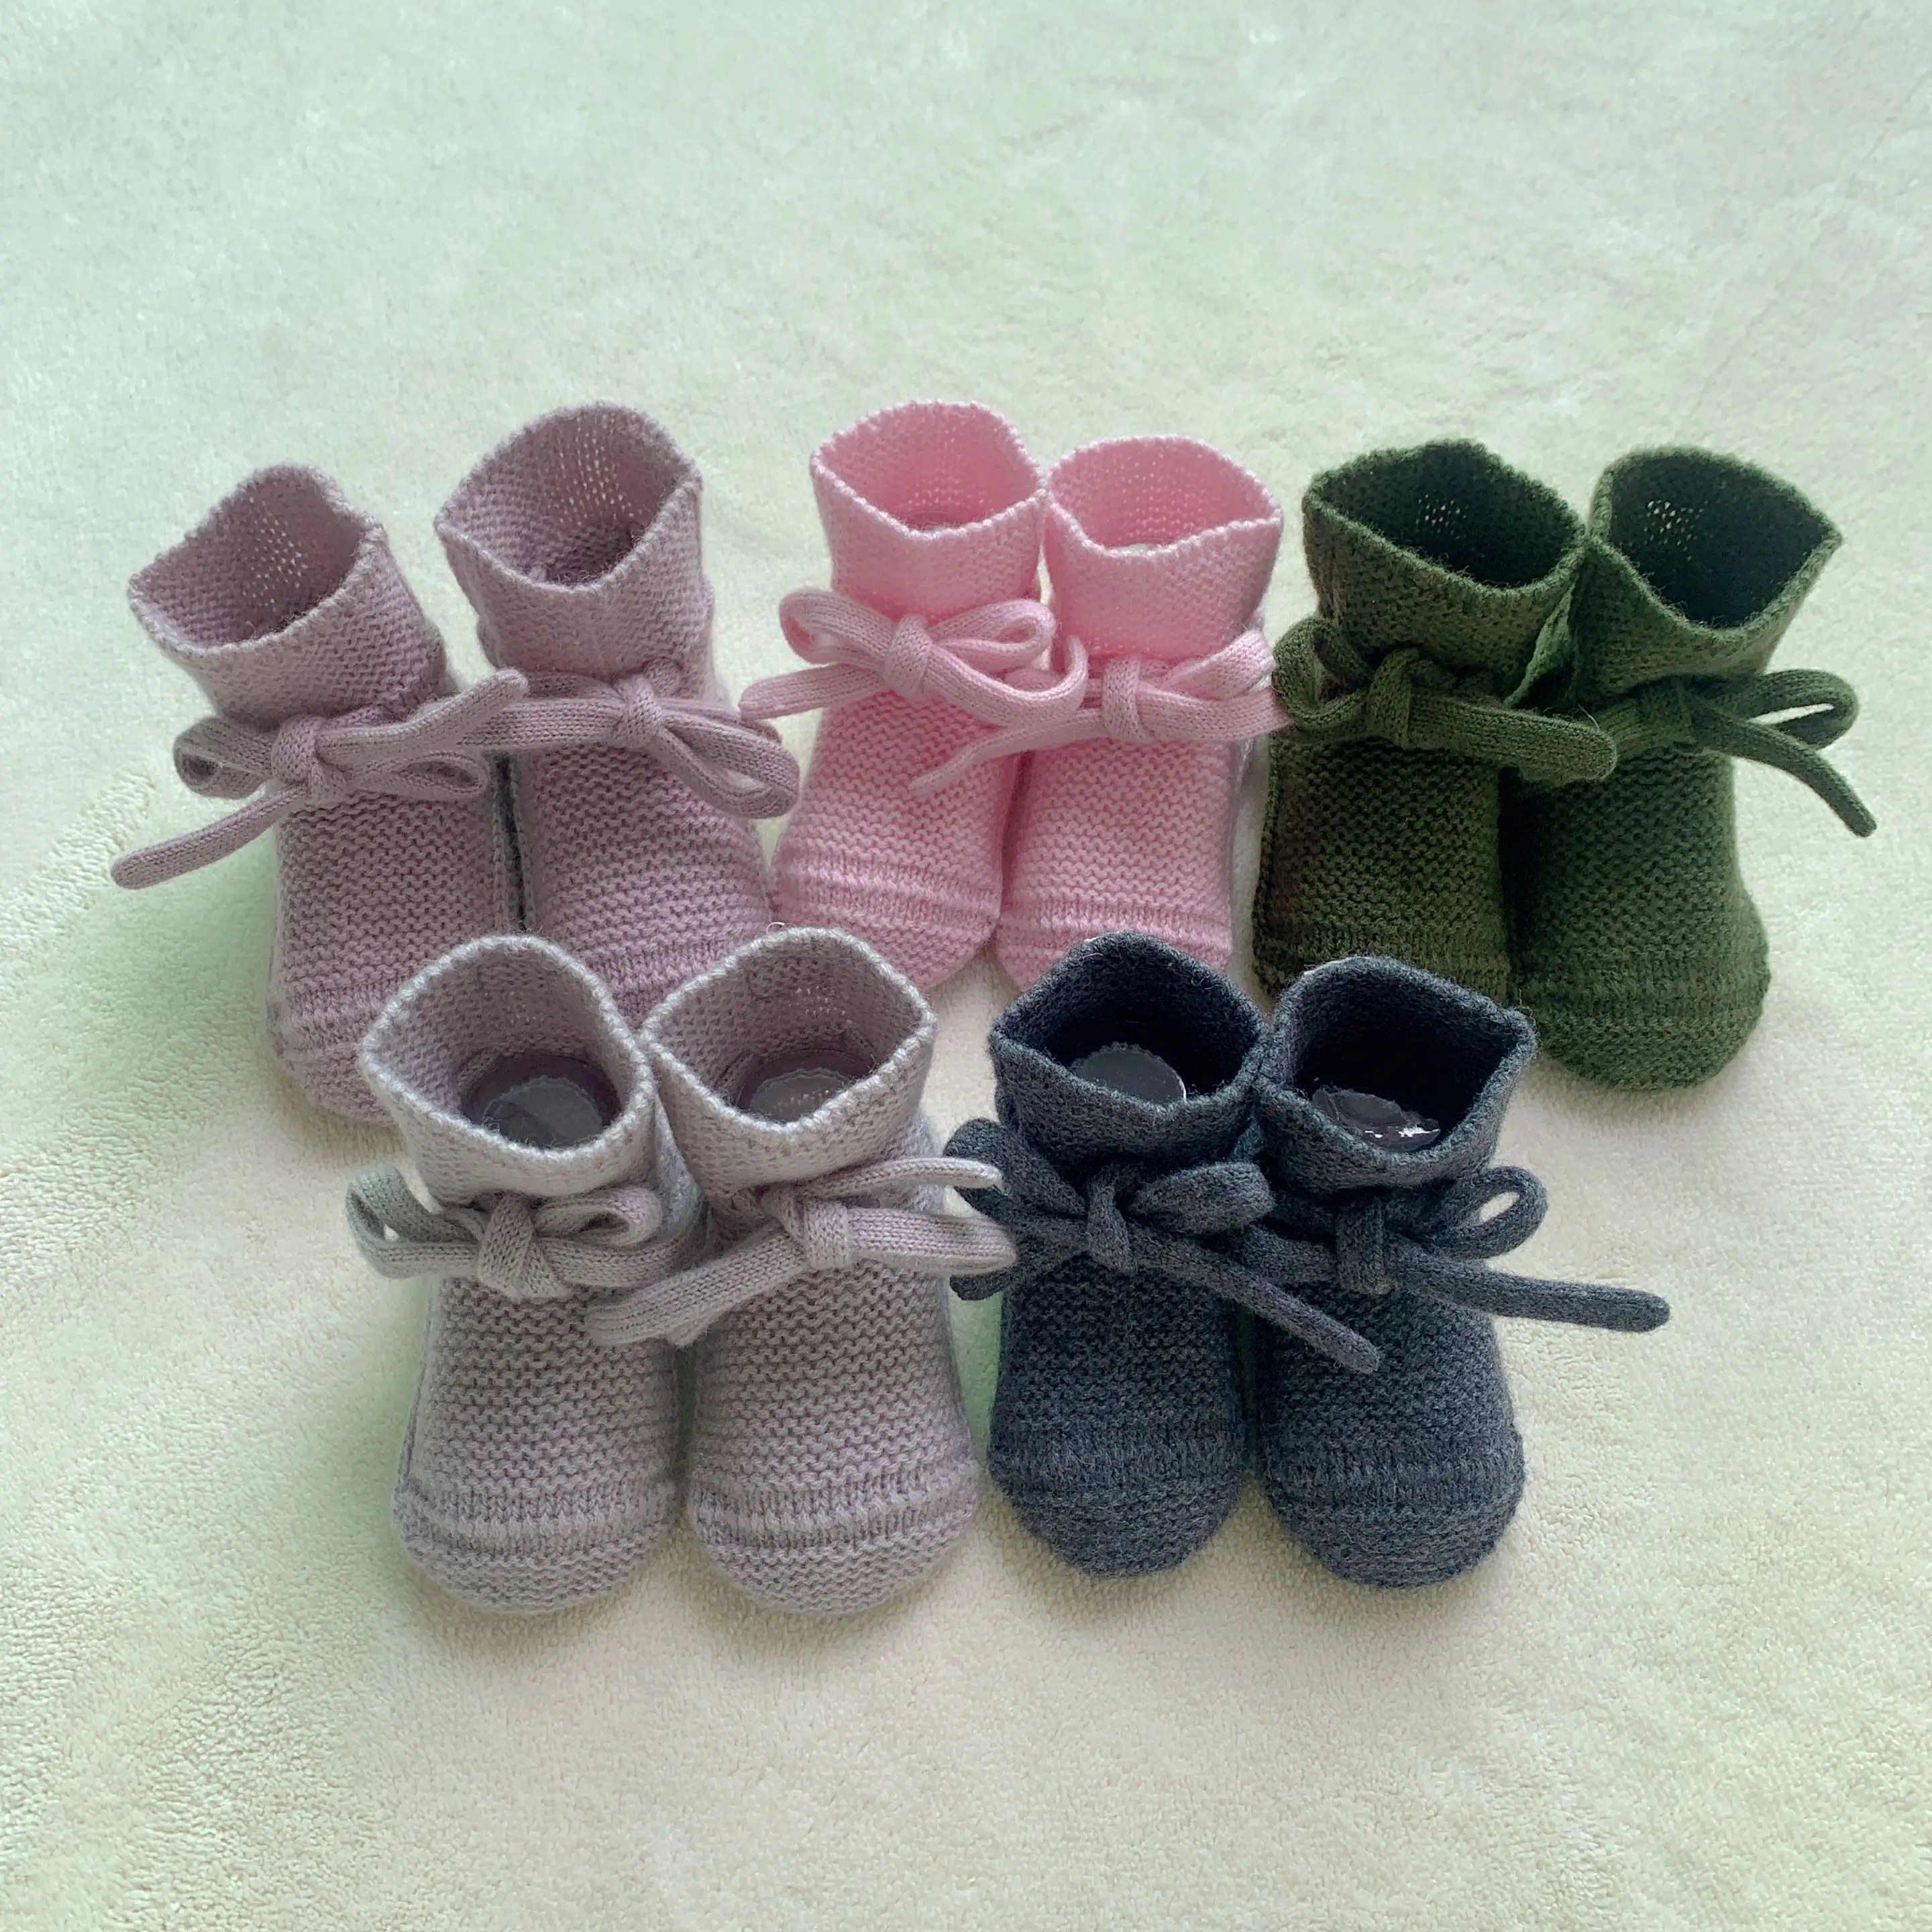 100% al por mayor de lana de merino hecho a mano para bebés botines de ganchillo recién nacido botines infantiles